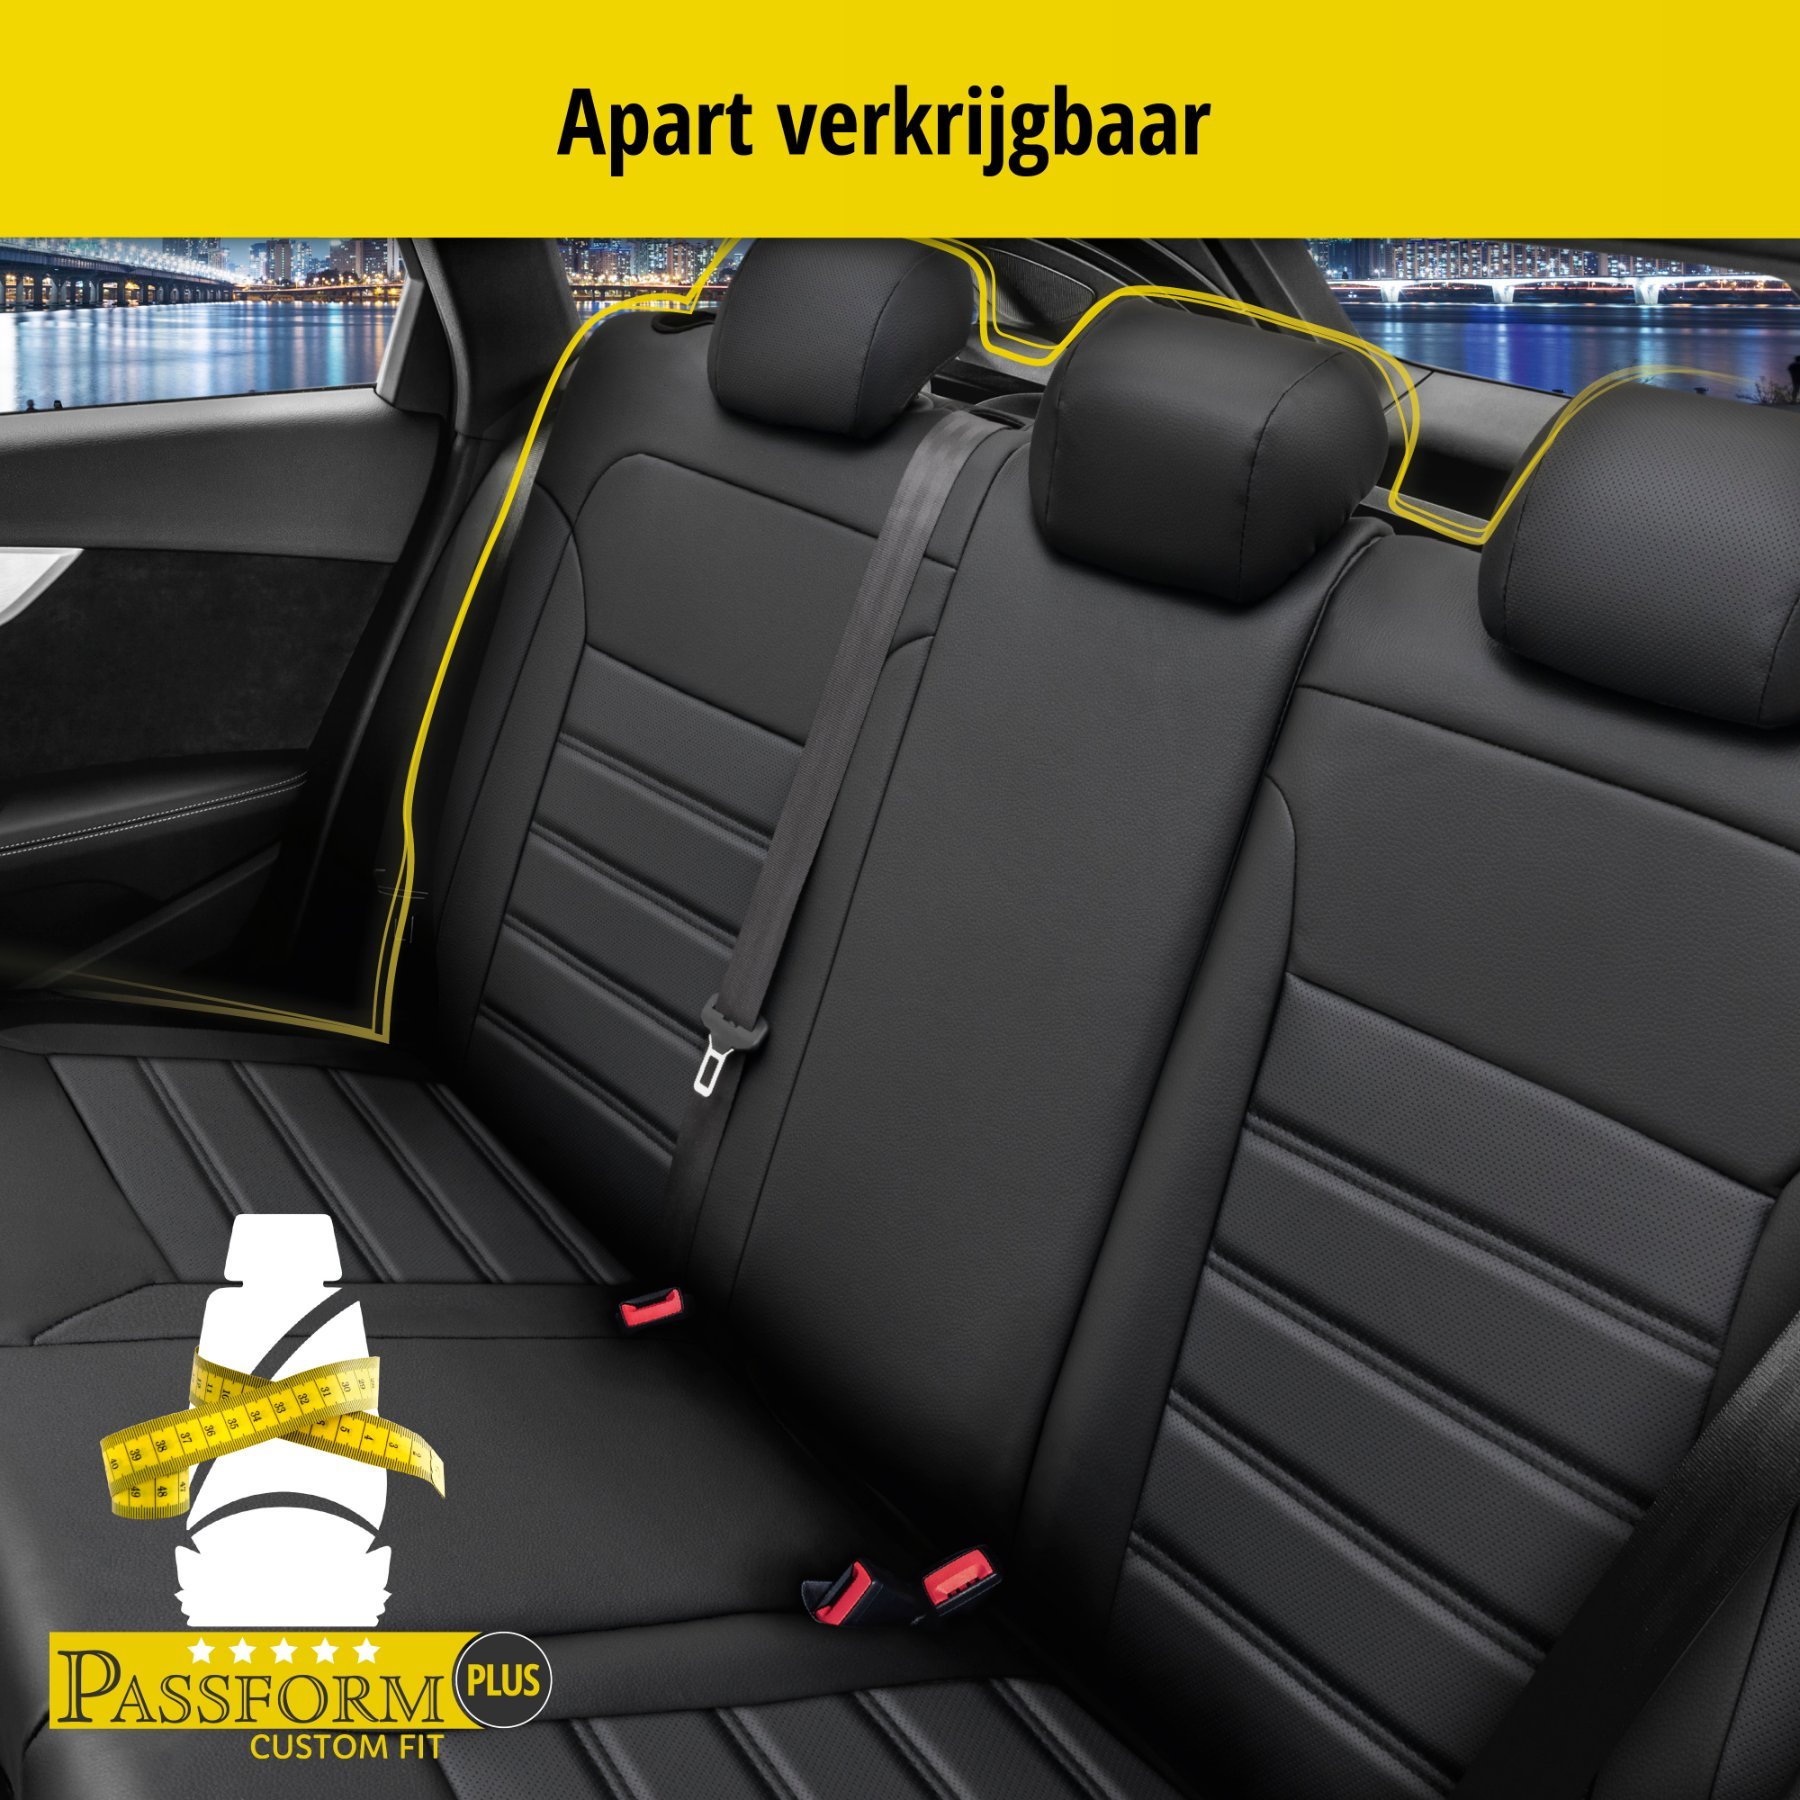 Auto stoelbekleding Robusto geschikt voor BMW X1 (E84) 03/2009-06/2015, 2 enkele zetelhoezen voor standard zetels